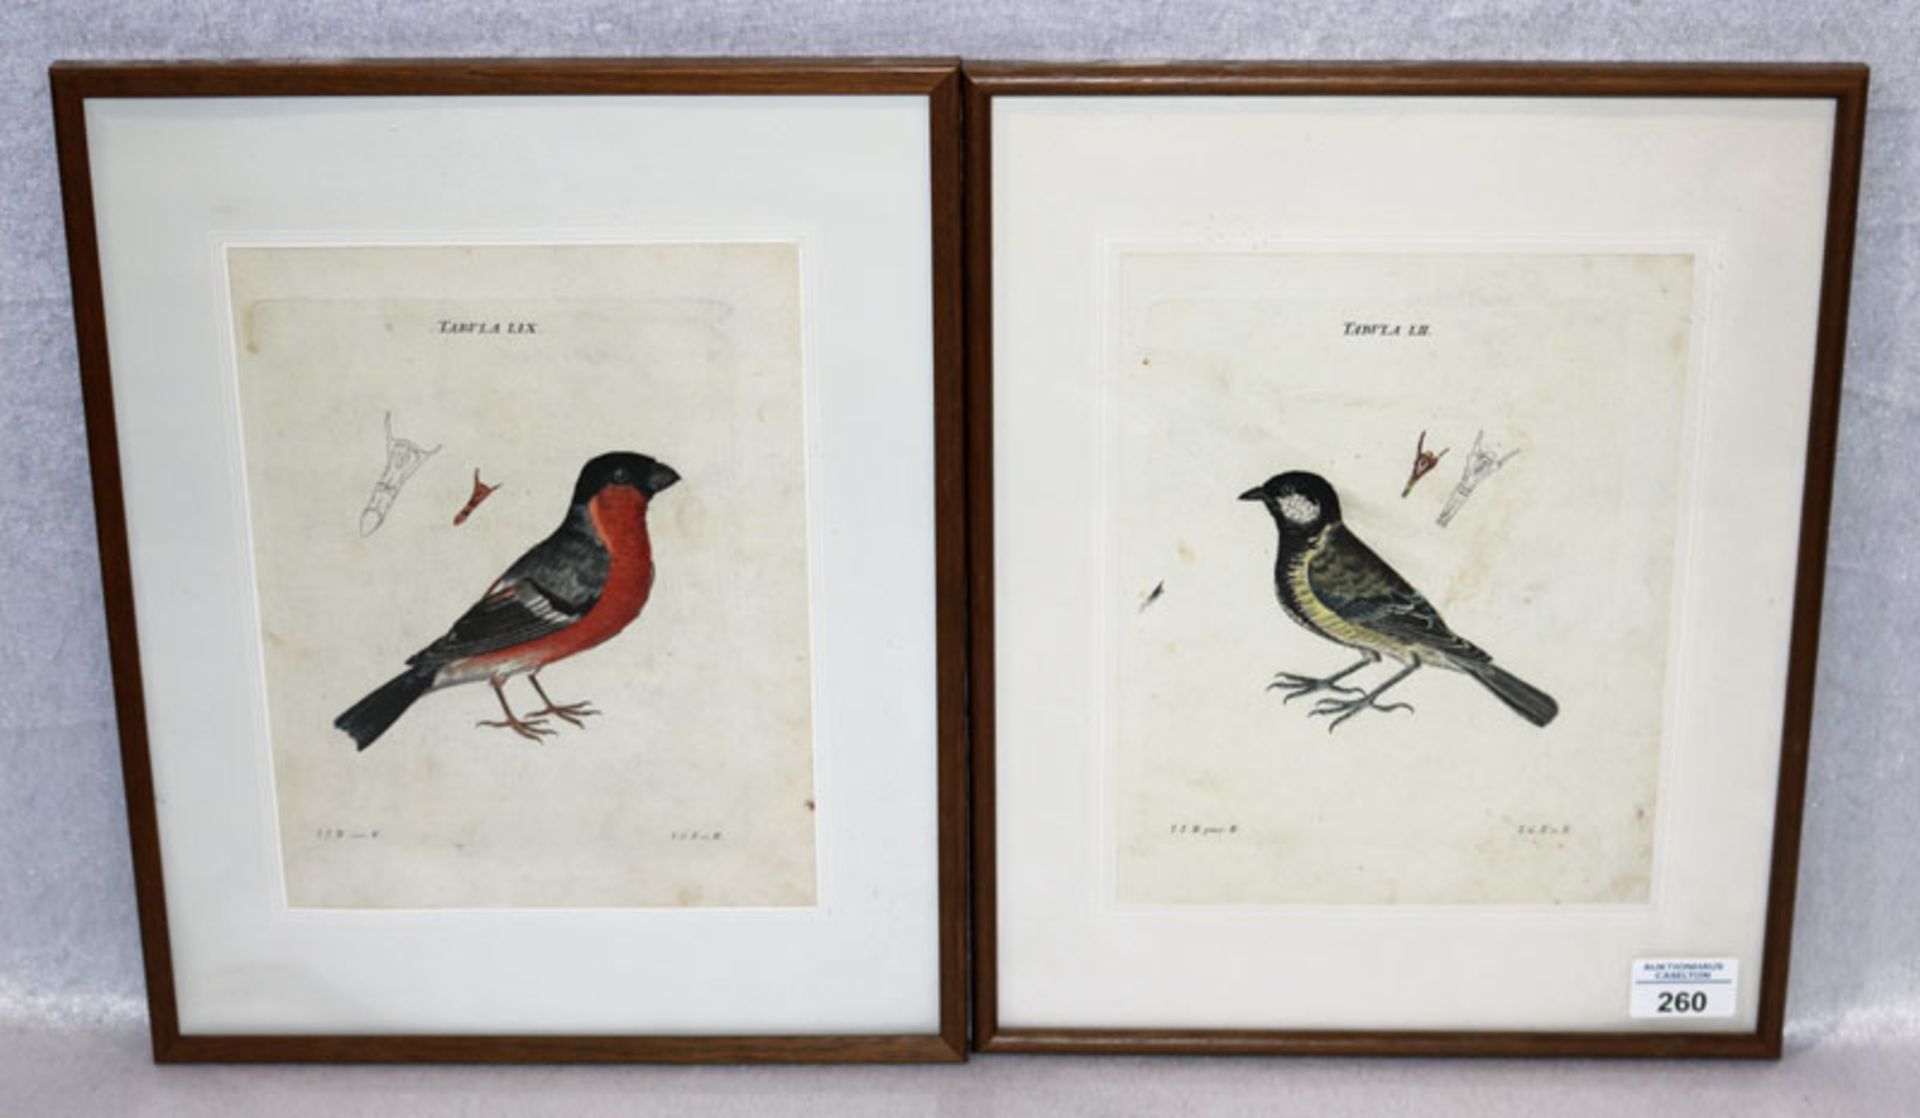 2 colorierte Stiche 'Vögel', 19. Jahrhundert, teils fleckig, mit Passepartout unter Glas gerahmt,